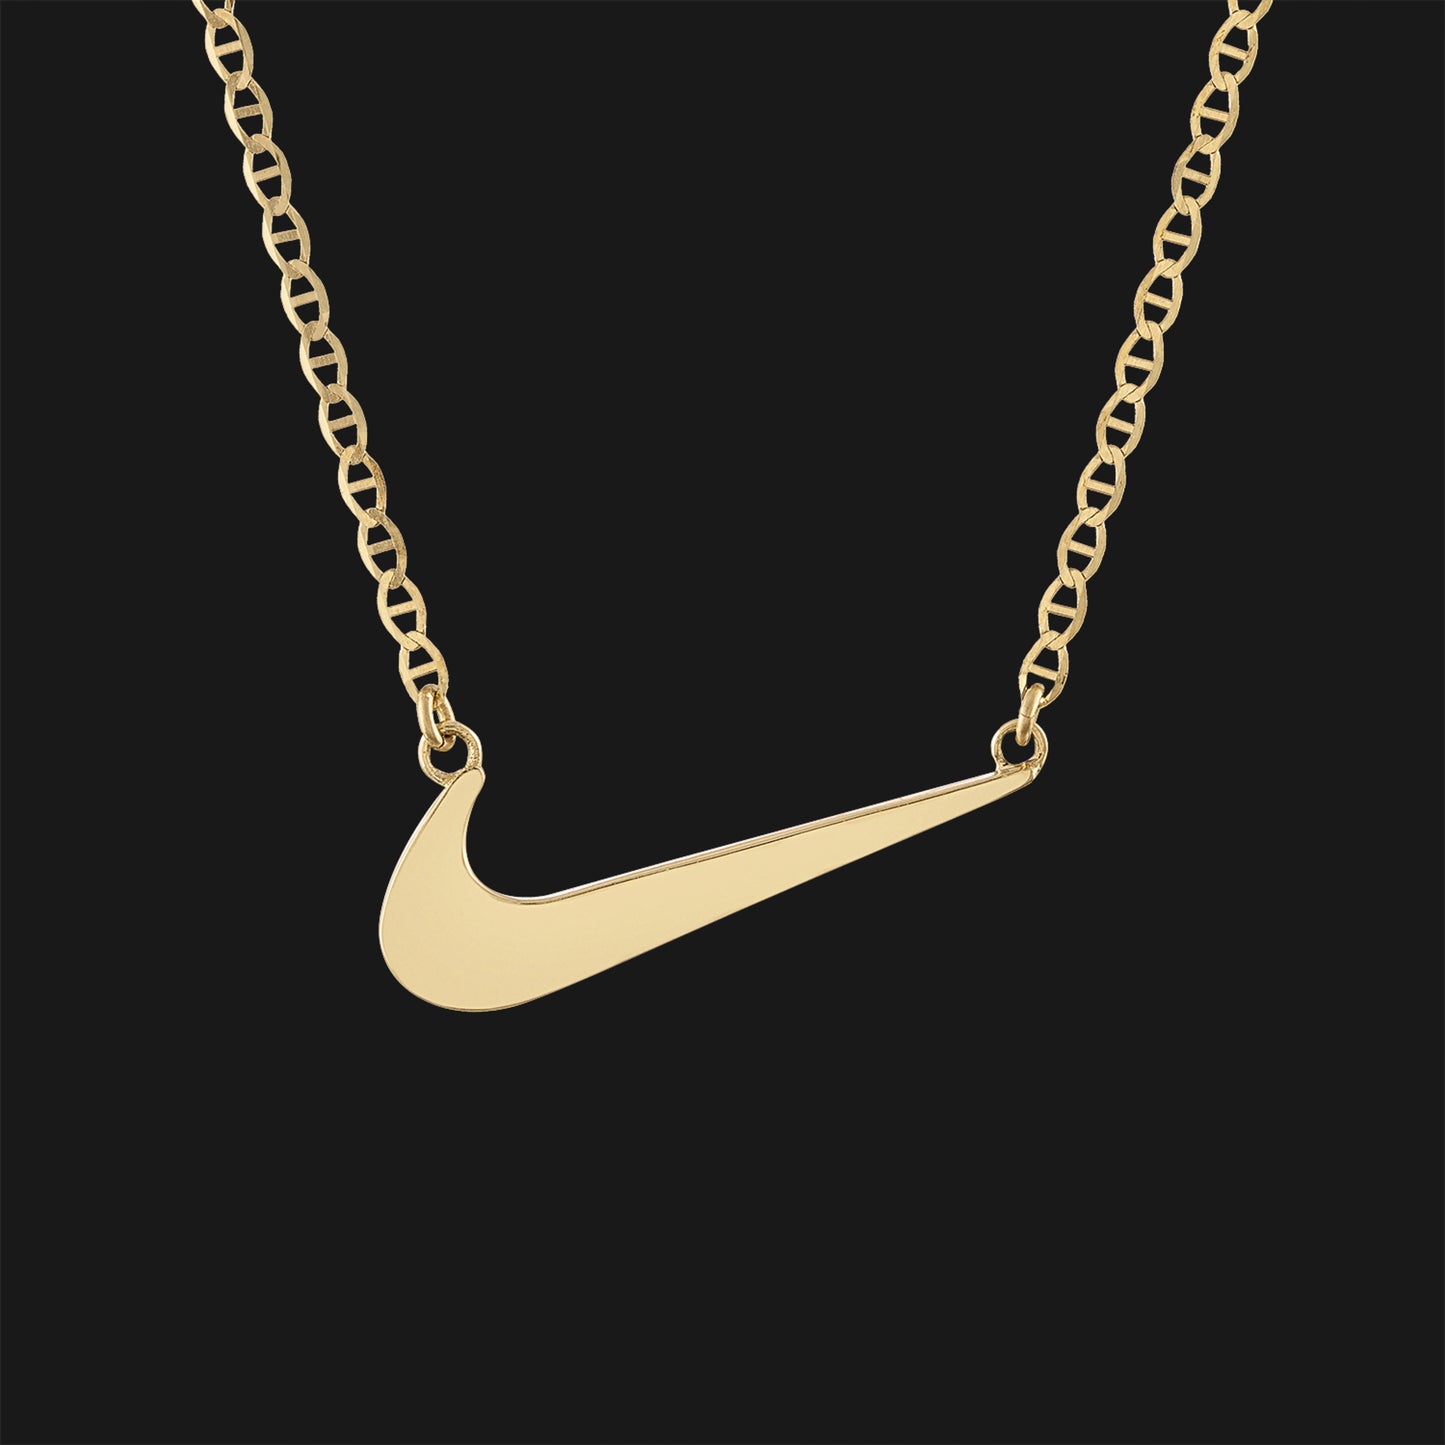 Nike Swoosh Mariner Chain 19 in 14K Yellow Gold